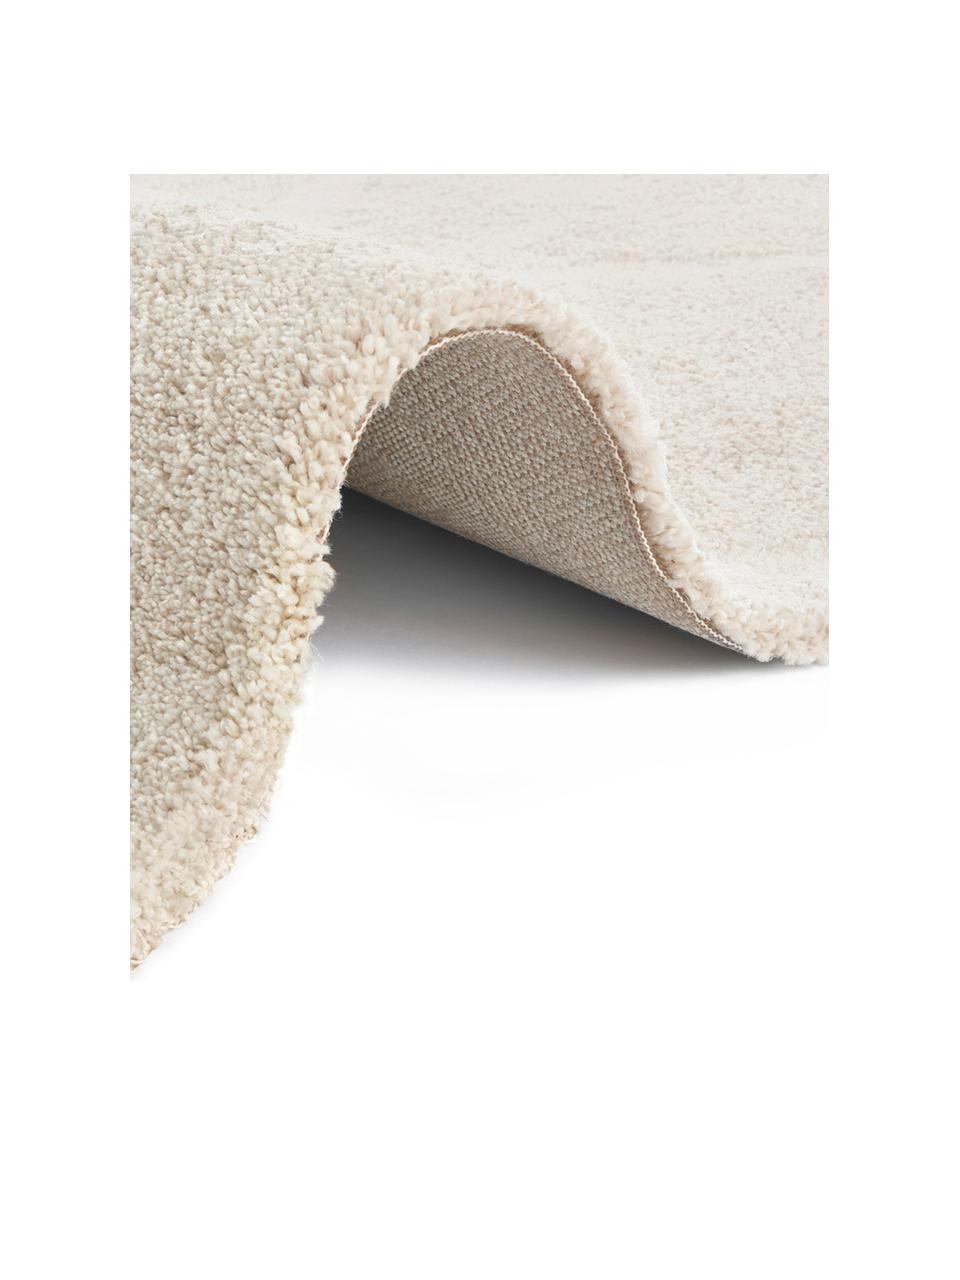 Teppich Lunel mit Rautenmuster, Flor: 85% Polypropylen, 15% Pol, Beige, Cremefarben, B 80 x L 150 cm (Größe XS)